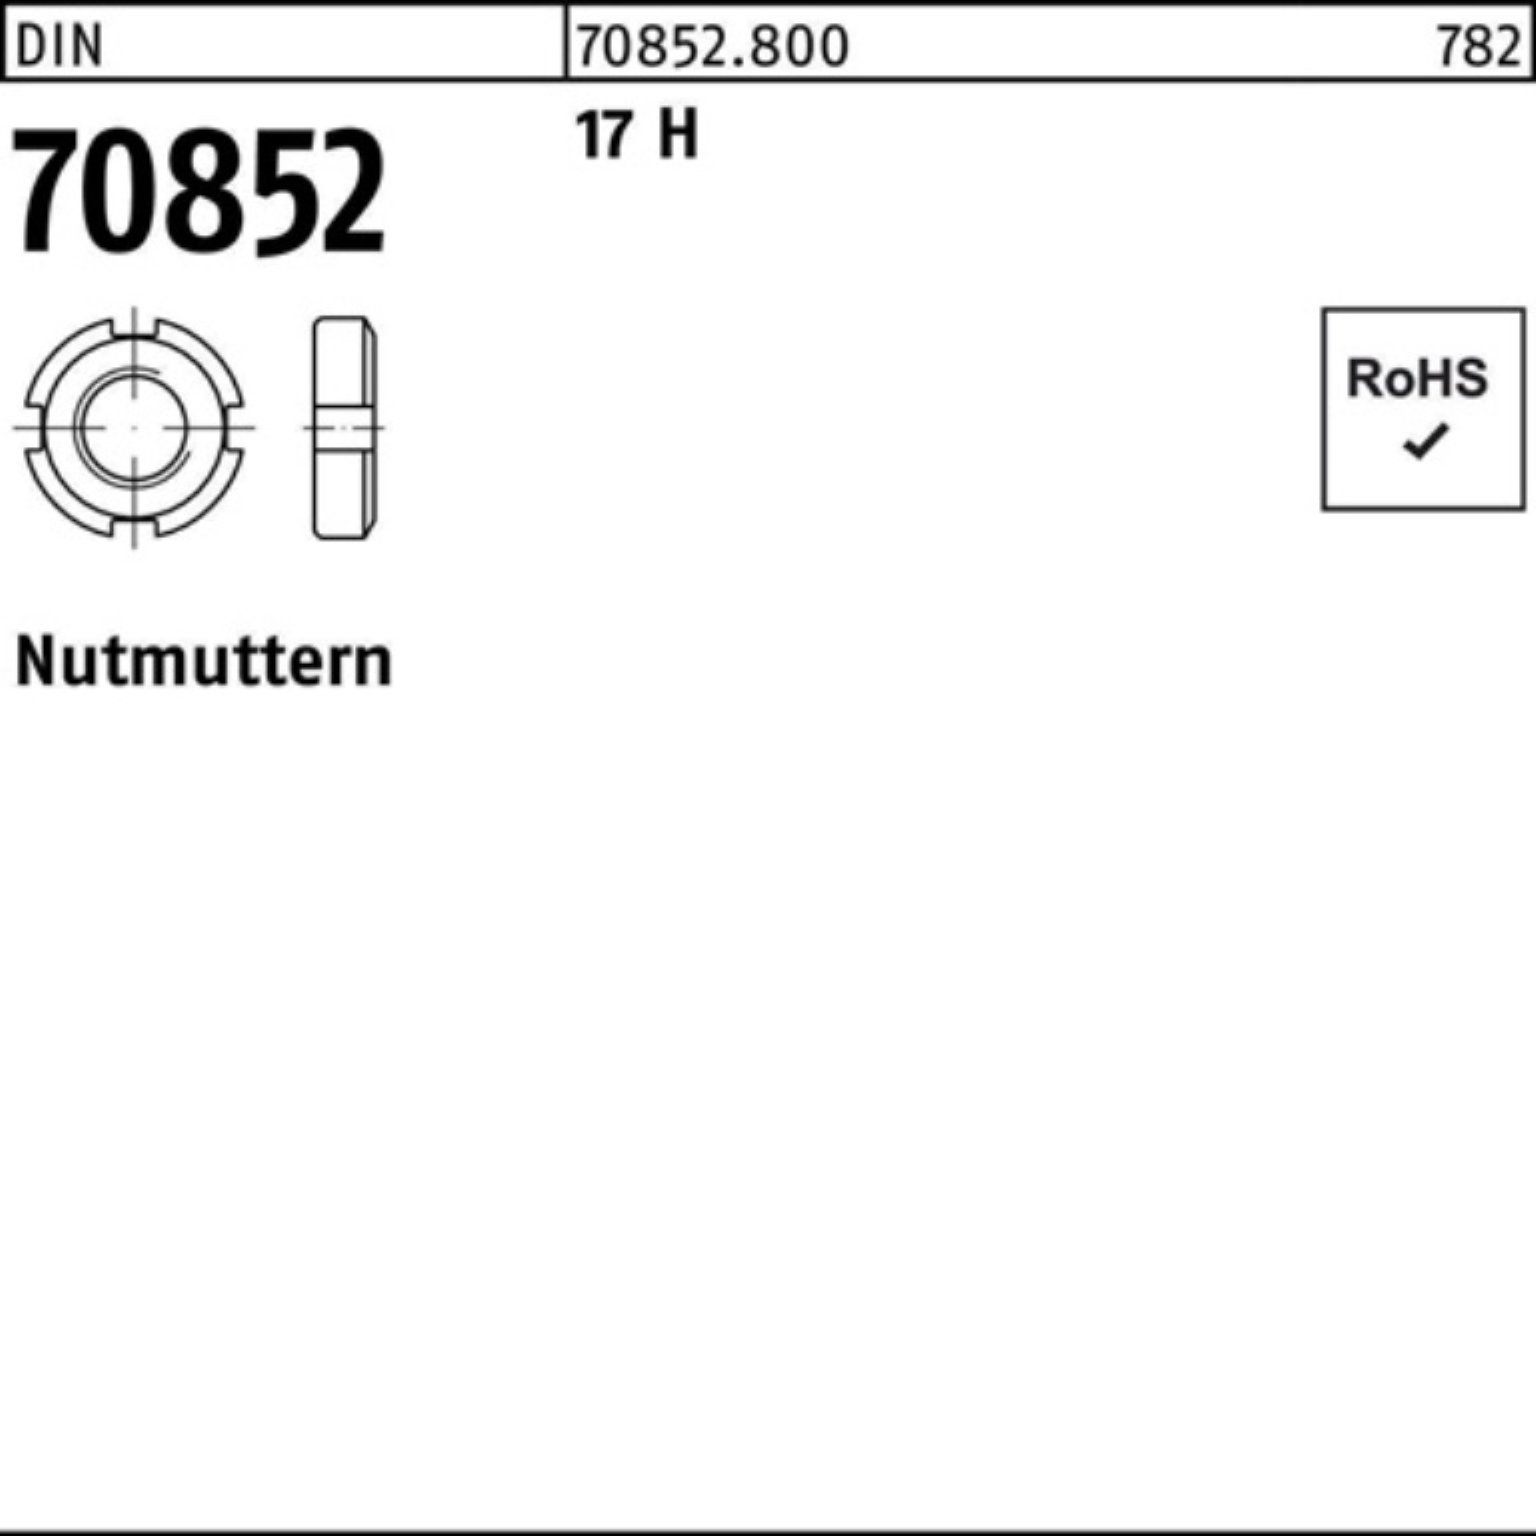 Reyher Nutmutter 100er Pack Nutmutter DIN 70852 M30x 1,5 17 H 1 Stück DIN 70852 17 H N